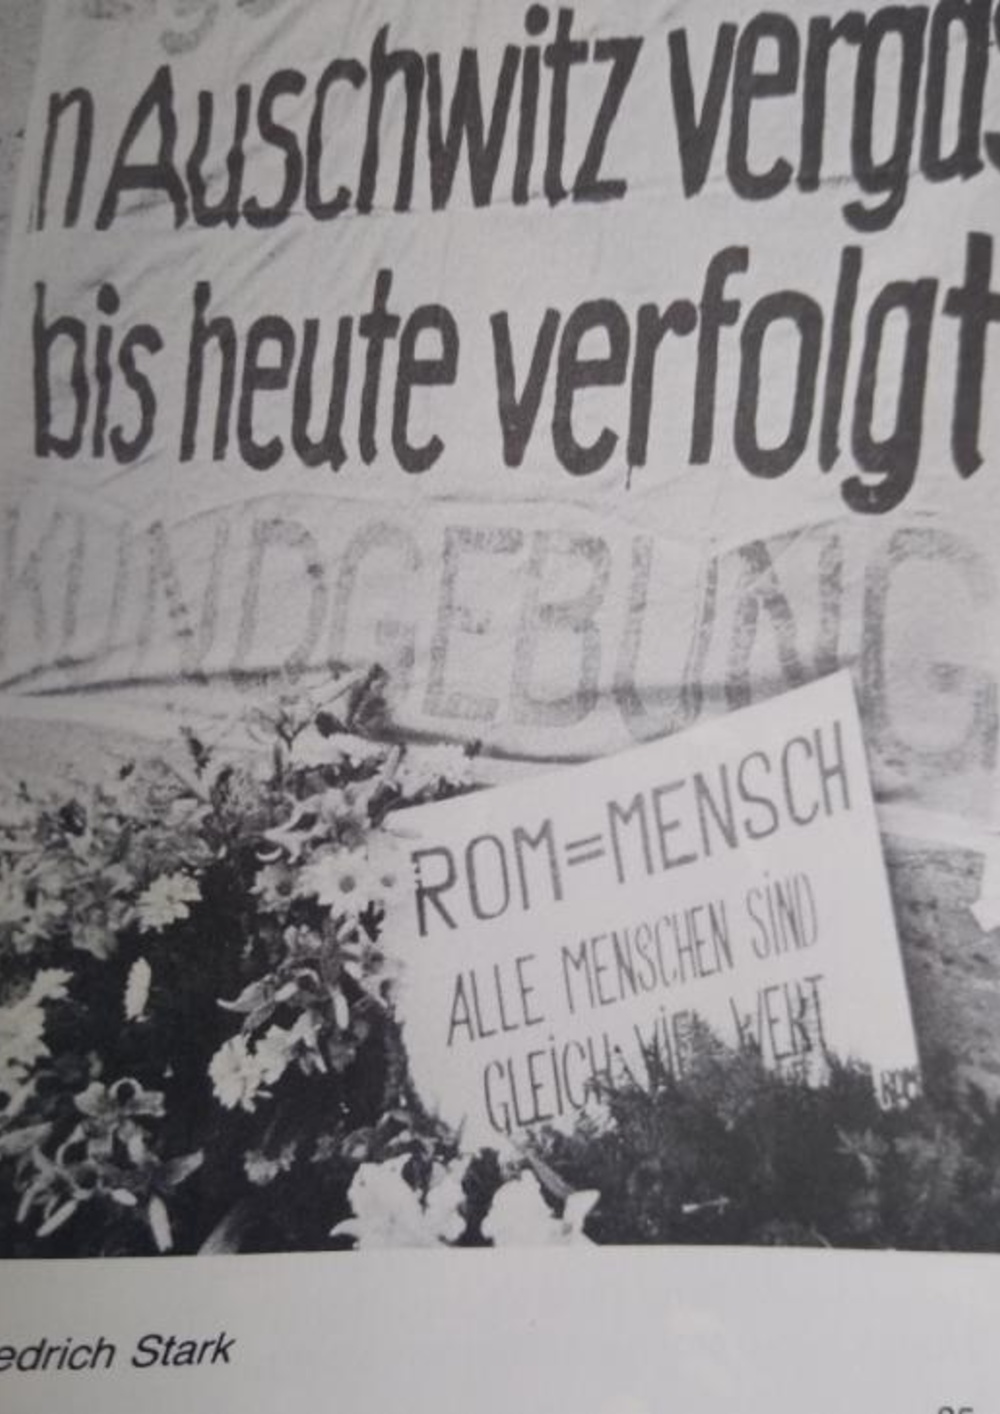 Bild von der Gedenkkundgebung im ehemaligen KZ Bergen-Belsen am 27.10.1979